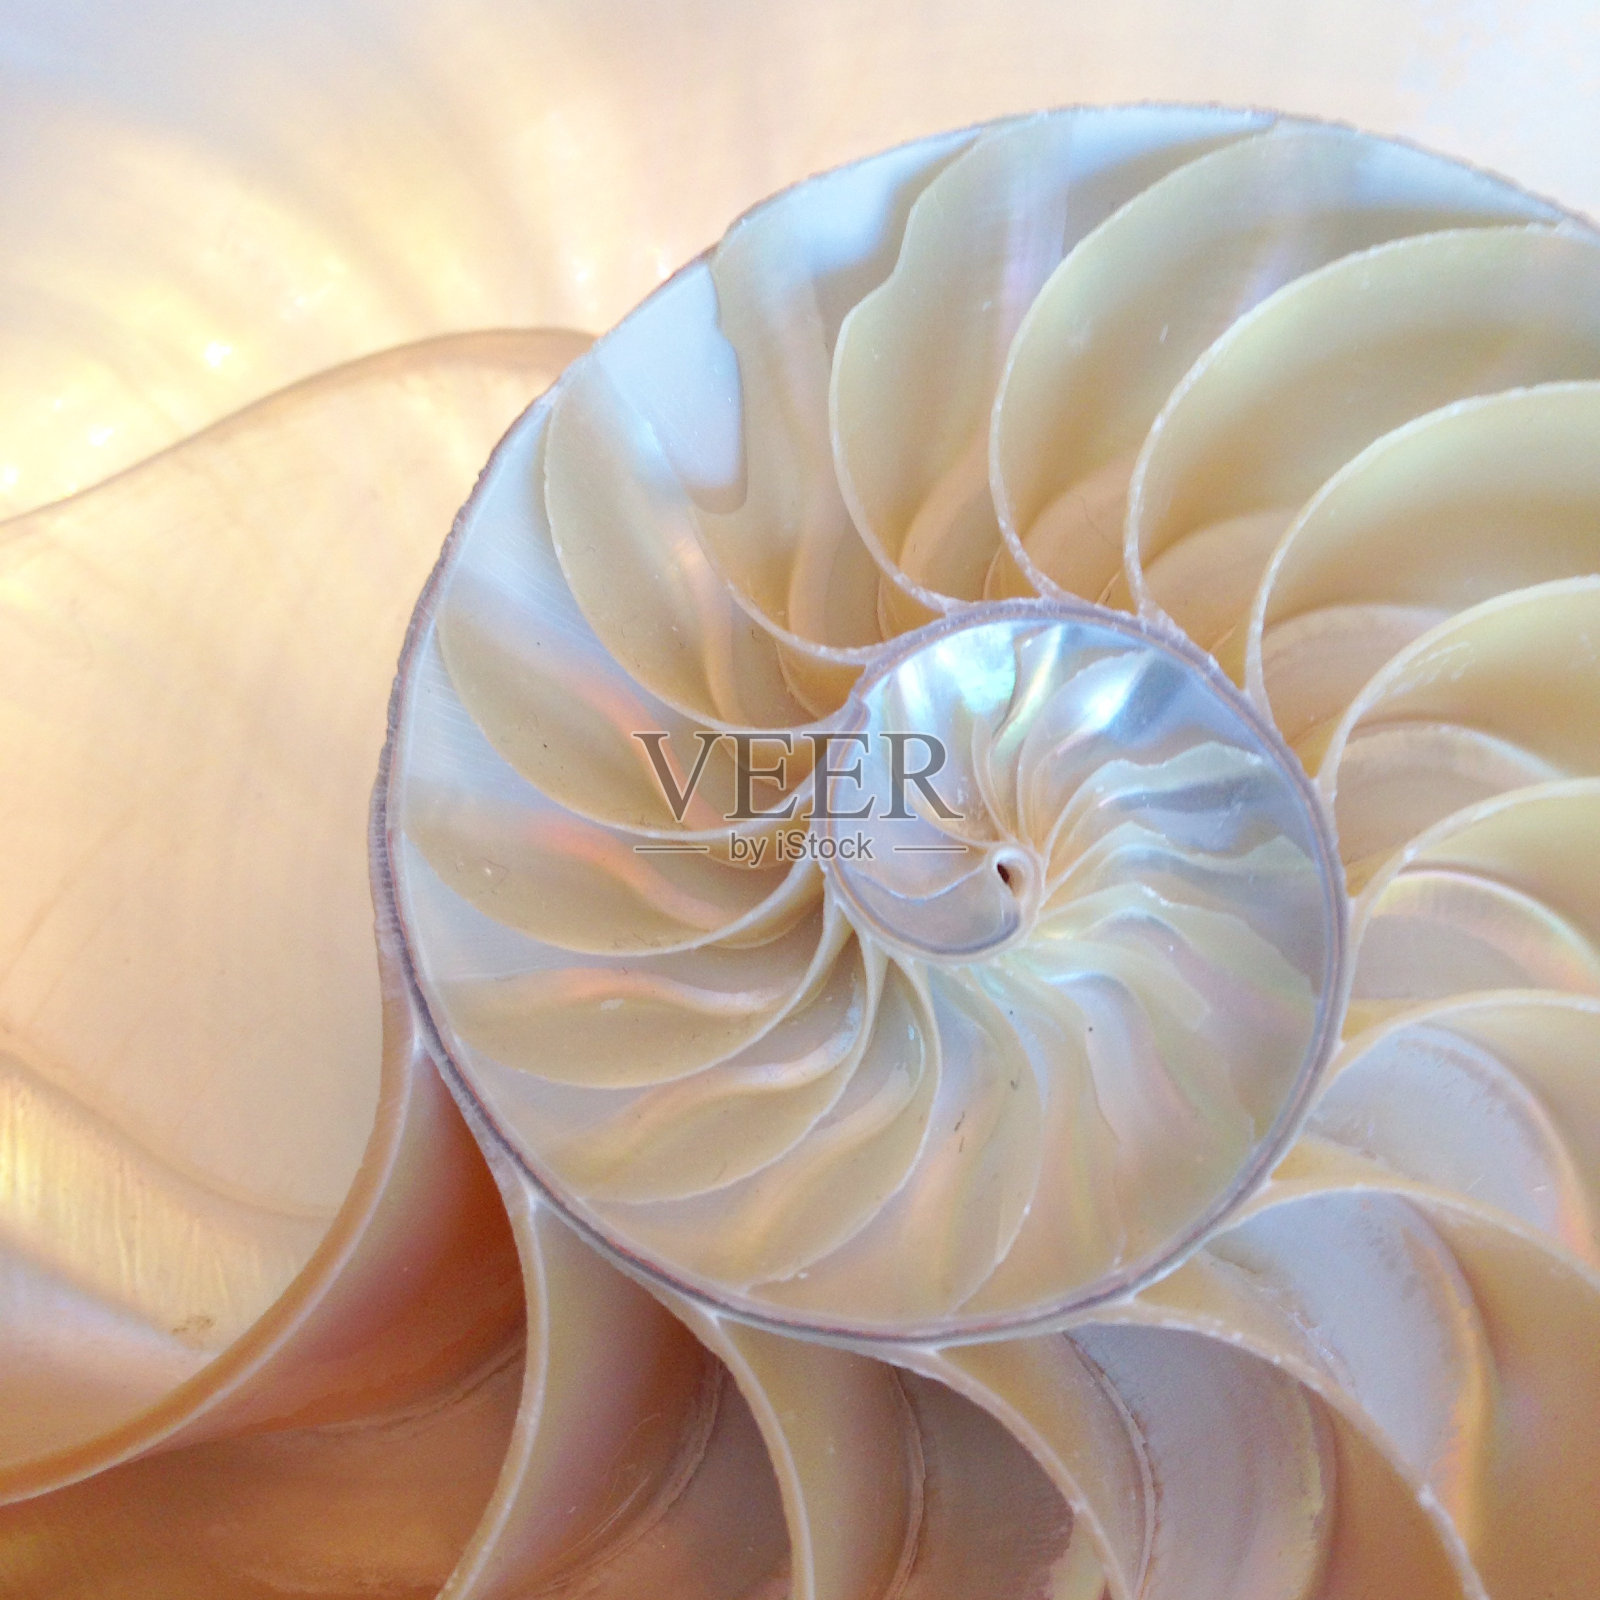 螺壳的截面呈对称螺旋状生长结构照片摄影图片